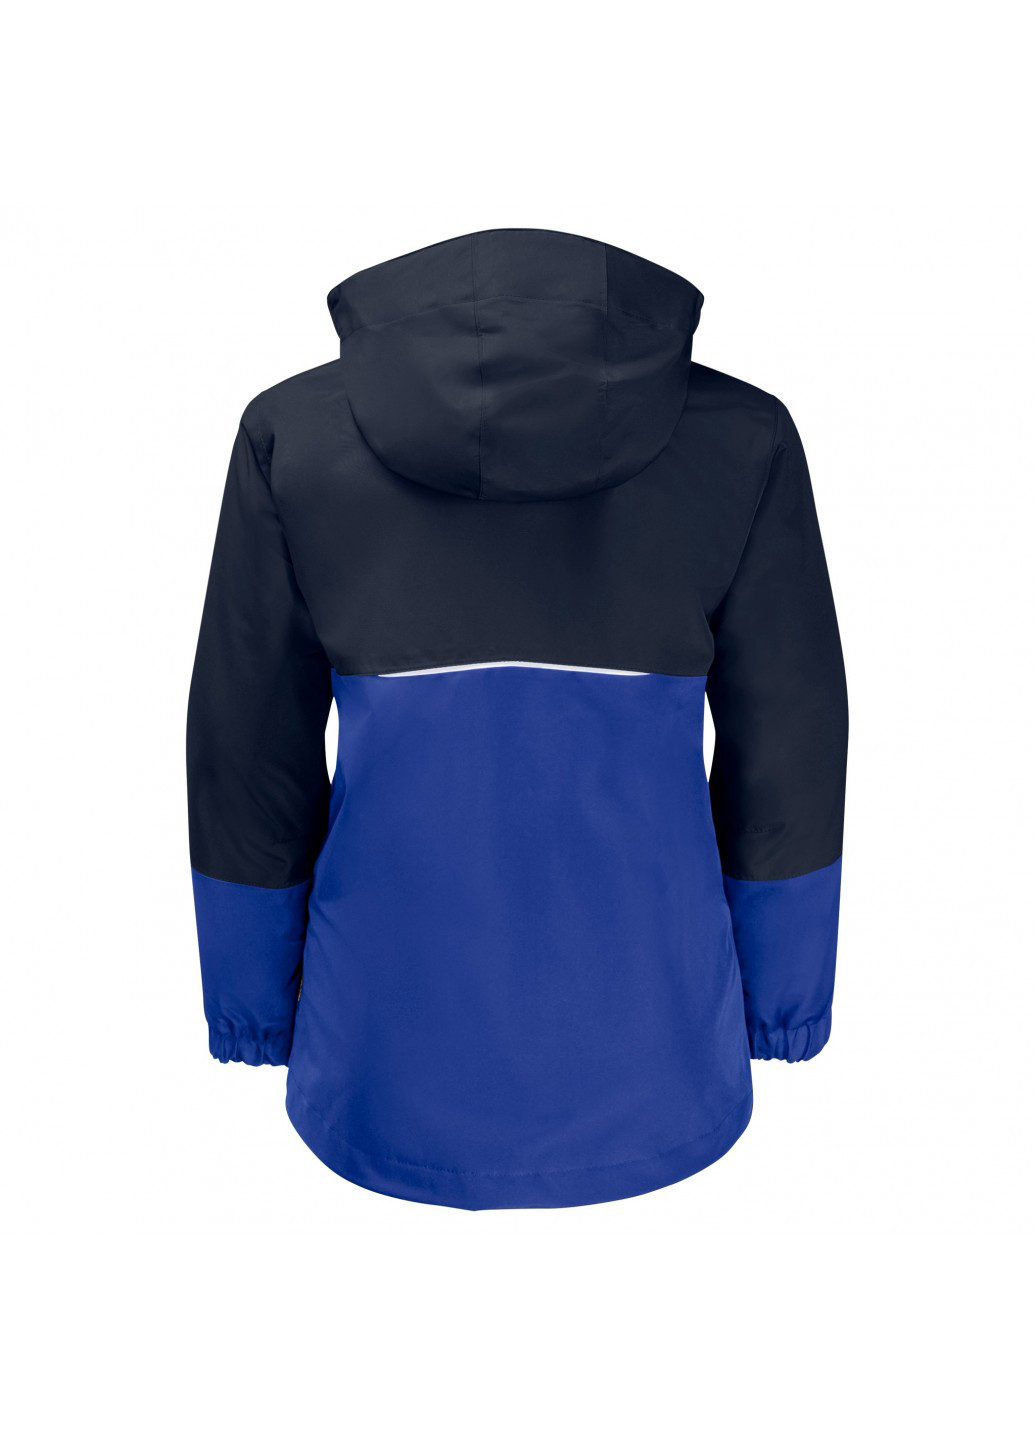 Синяя демисезонная куртка 3 в 1 Jack Wolfskin 1605255_1080